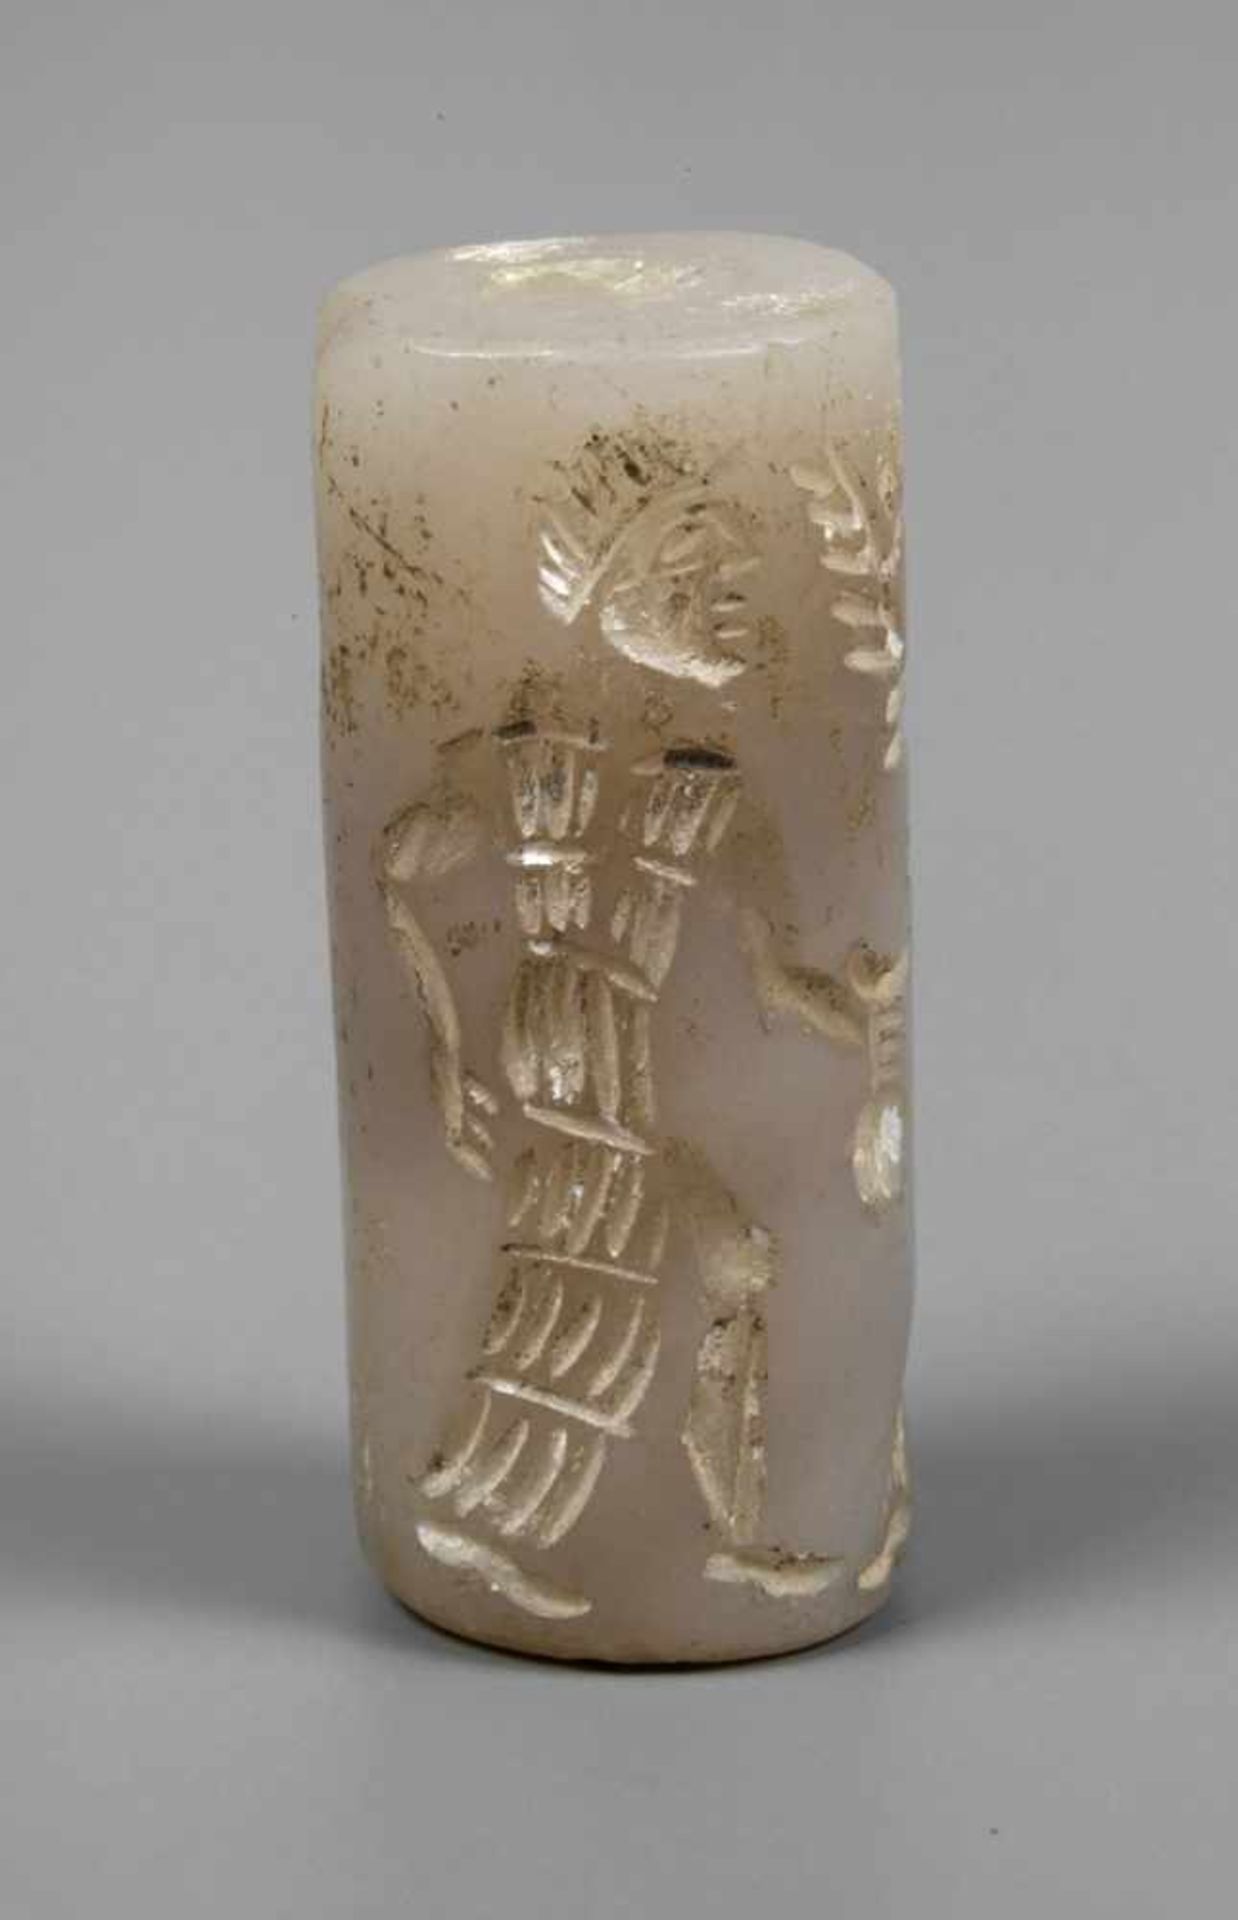 Vorderasiatisches Rollsiegelwohl Mesopotamien, 2. Jahrtausend v. Chr., zylindrisches, röhrenförmiges